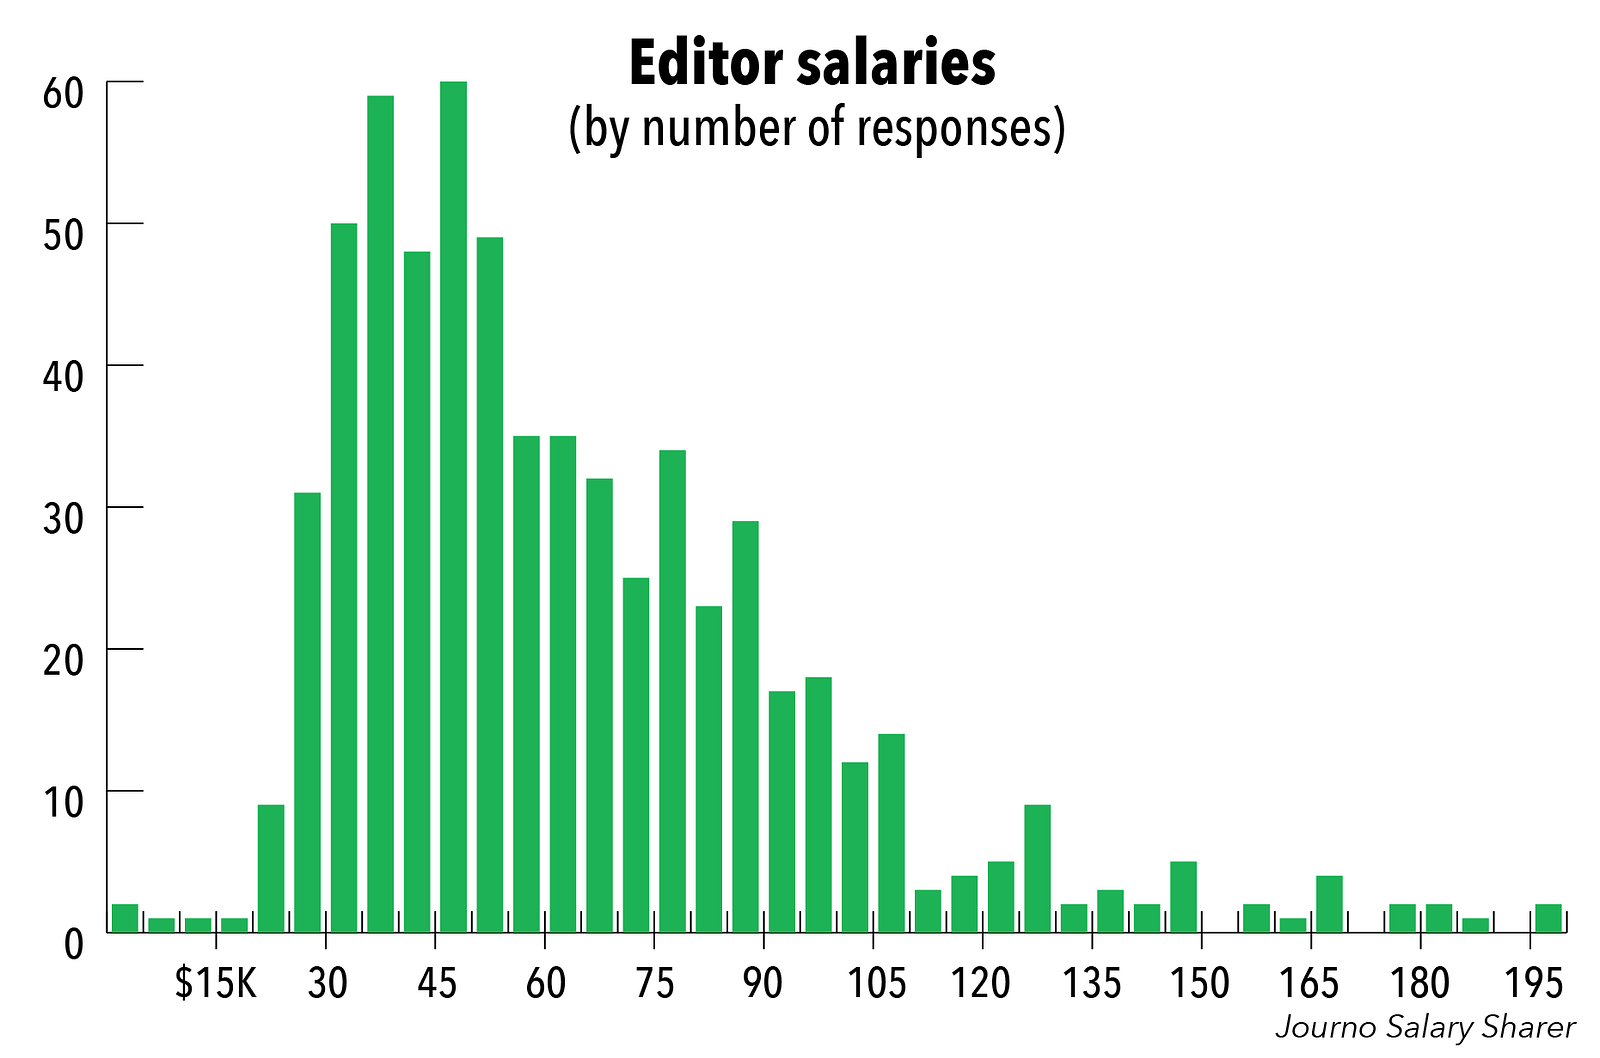 Journo Salary Sharer How Much Do Editors Make Journo Salary Sharer Medium 6549